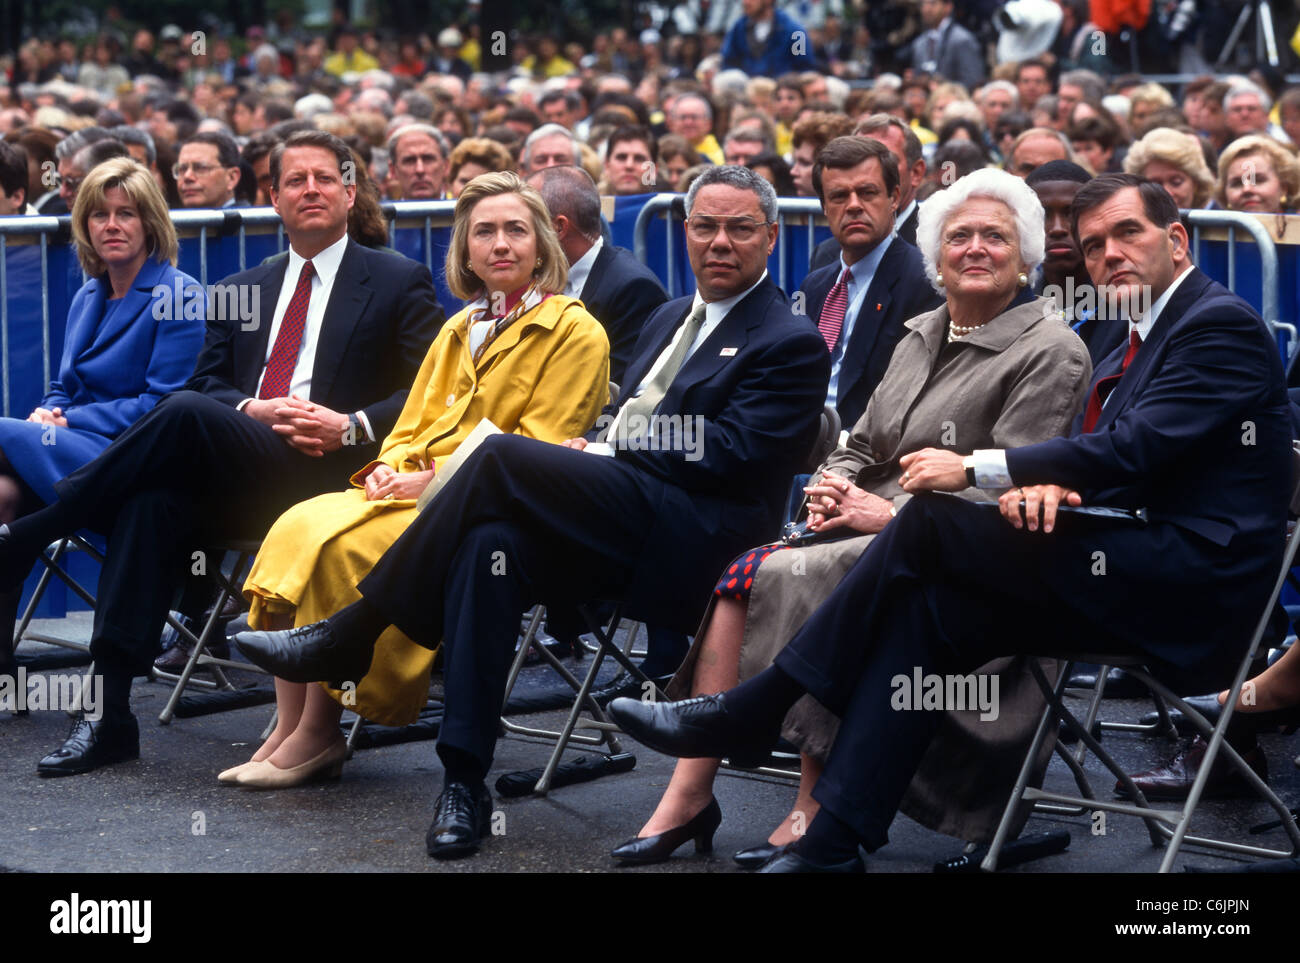 Tipper & Al Gore, Hillary Clinton, Colin Powell, Barbara Bush and Tom Ridge attend the Presidents Summit for America's Future Stock Photo